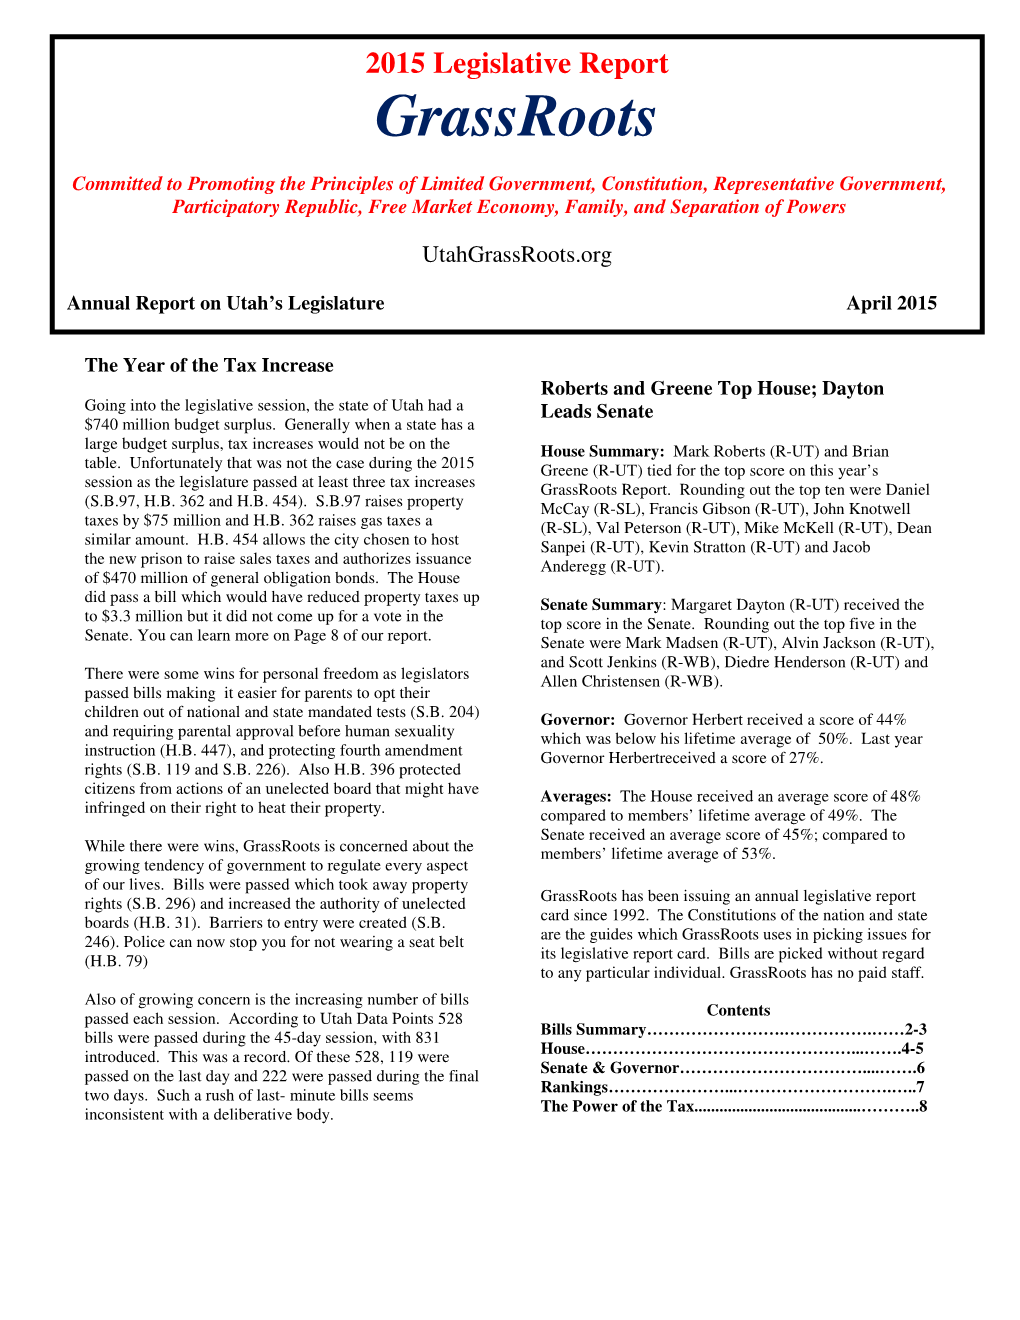 Grassroots, "2015 Legislative Report,"